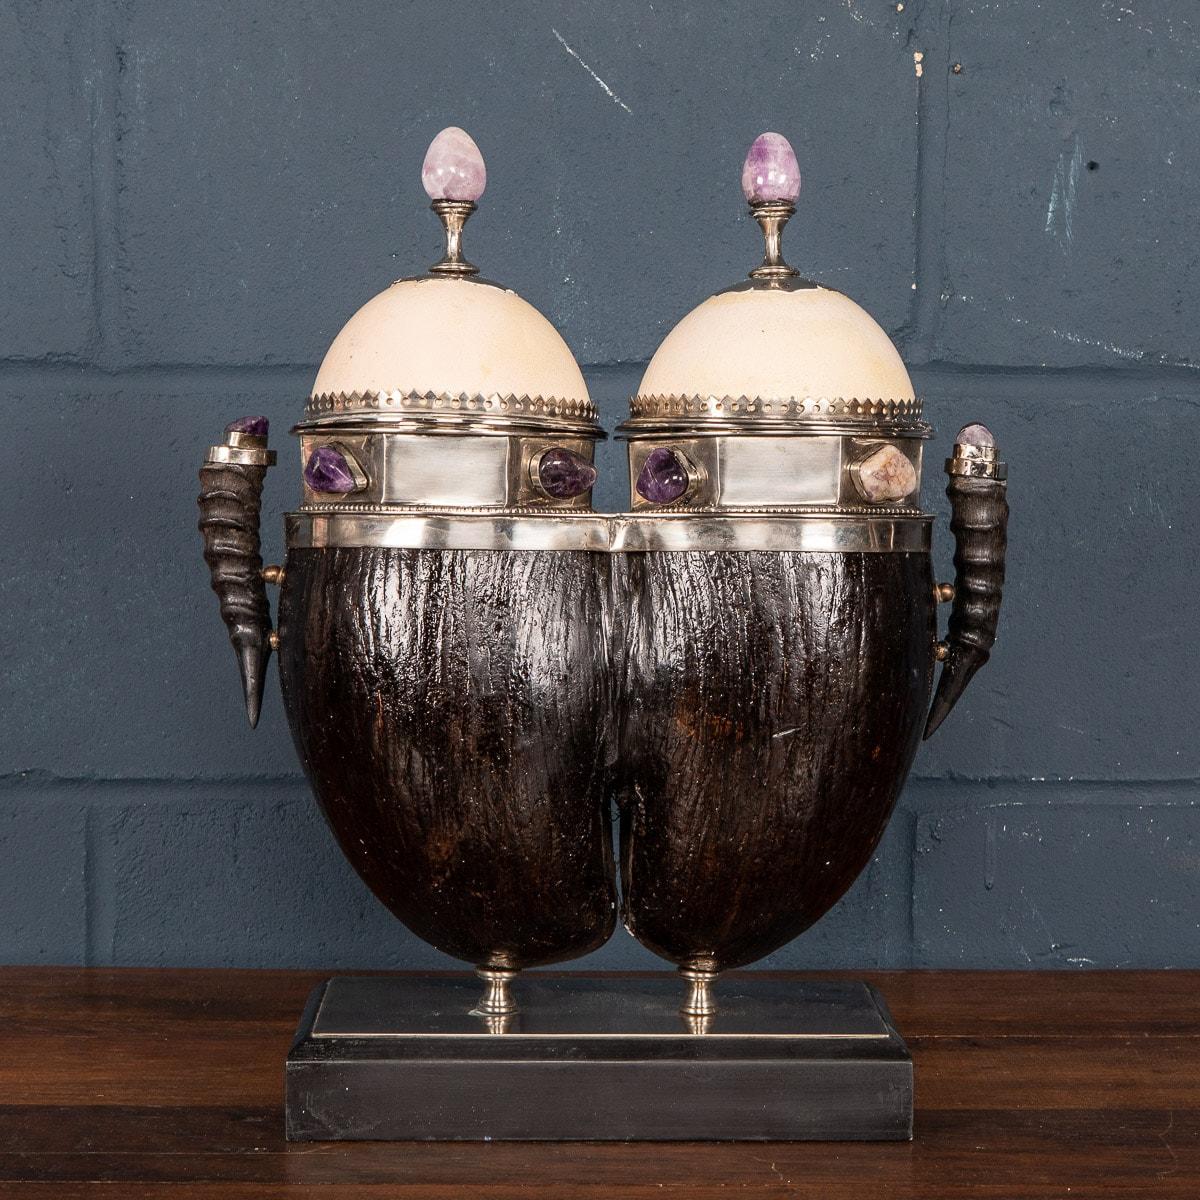 Une boîte de coco de mer extrêmement rare et inhabituelle fabriquée dans les années 1970 par Anthony Redmile. Montures argentées, couvercles en forme d'œuf d'autruche, ornés de malachite, de cabochons et de fleurons, flanqués de deux anses en corne